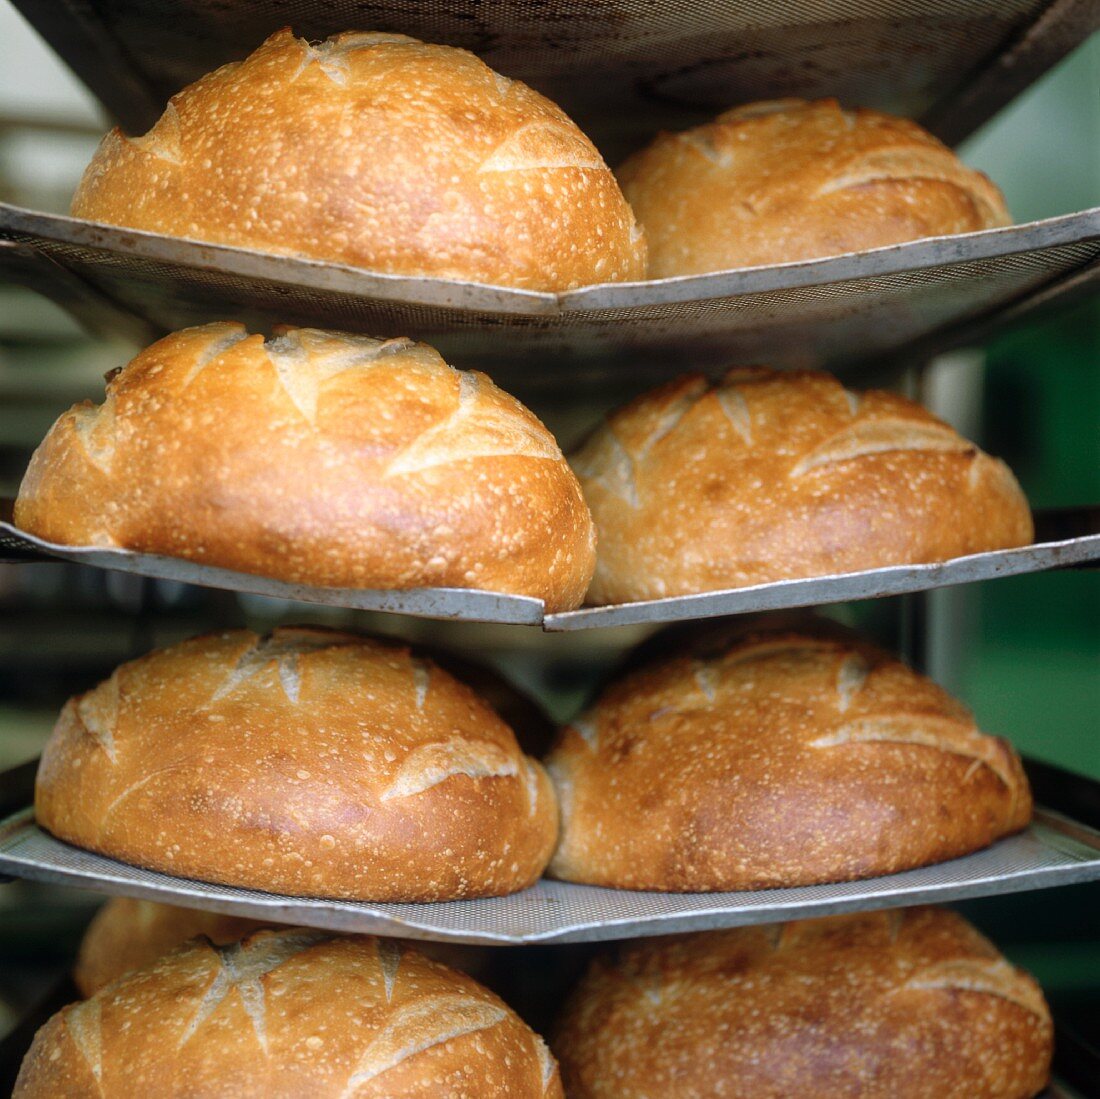 Sourdough bread on a rack in a bakery